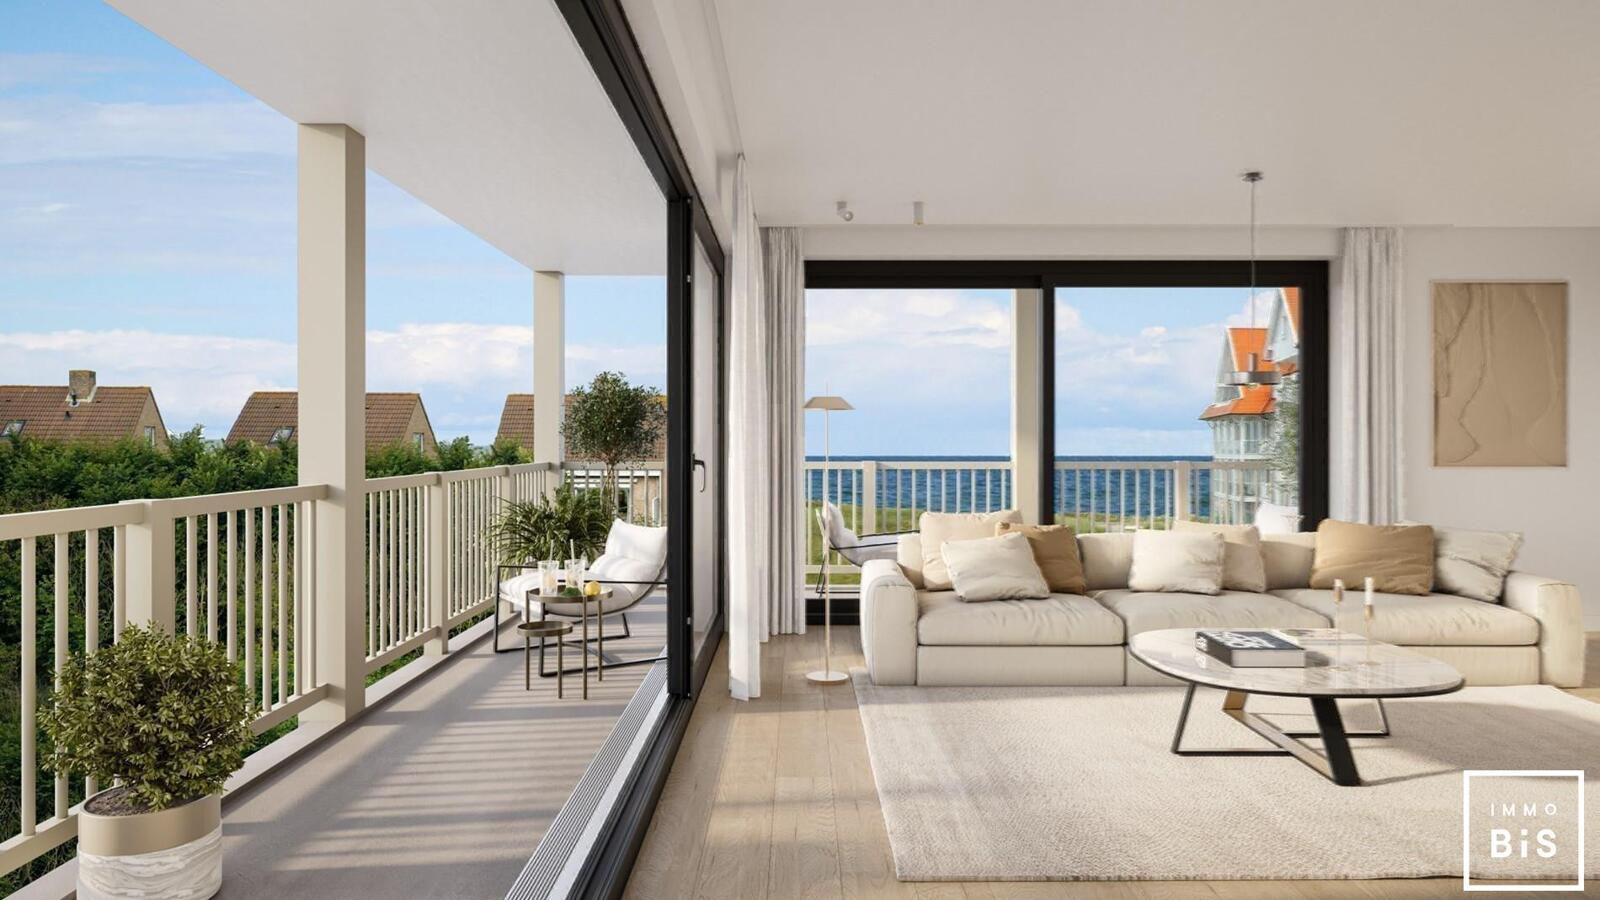 " Appartement villa moderne avec terrasse sur la Digue à Cadzand - Résidence Duinhof-Noord " 1